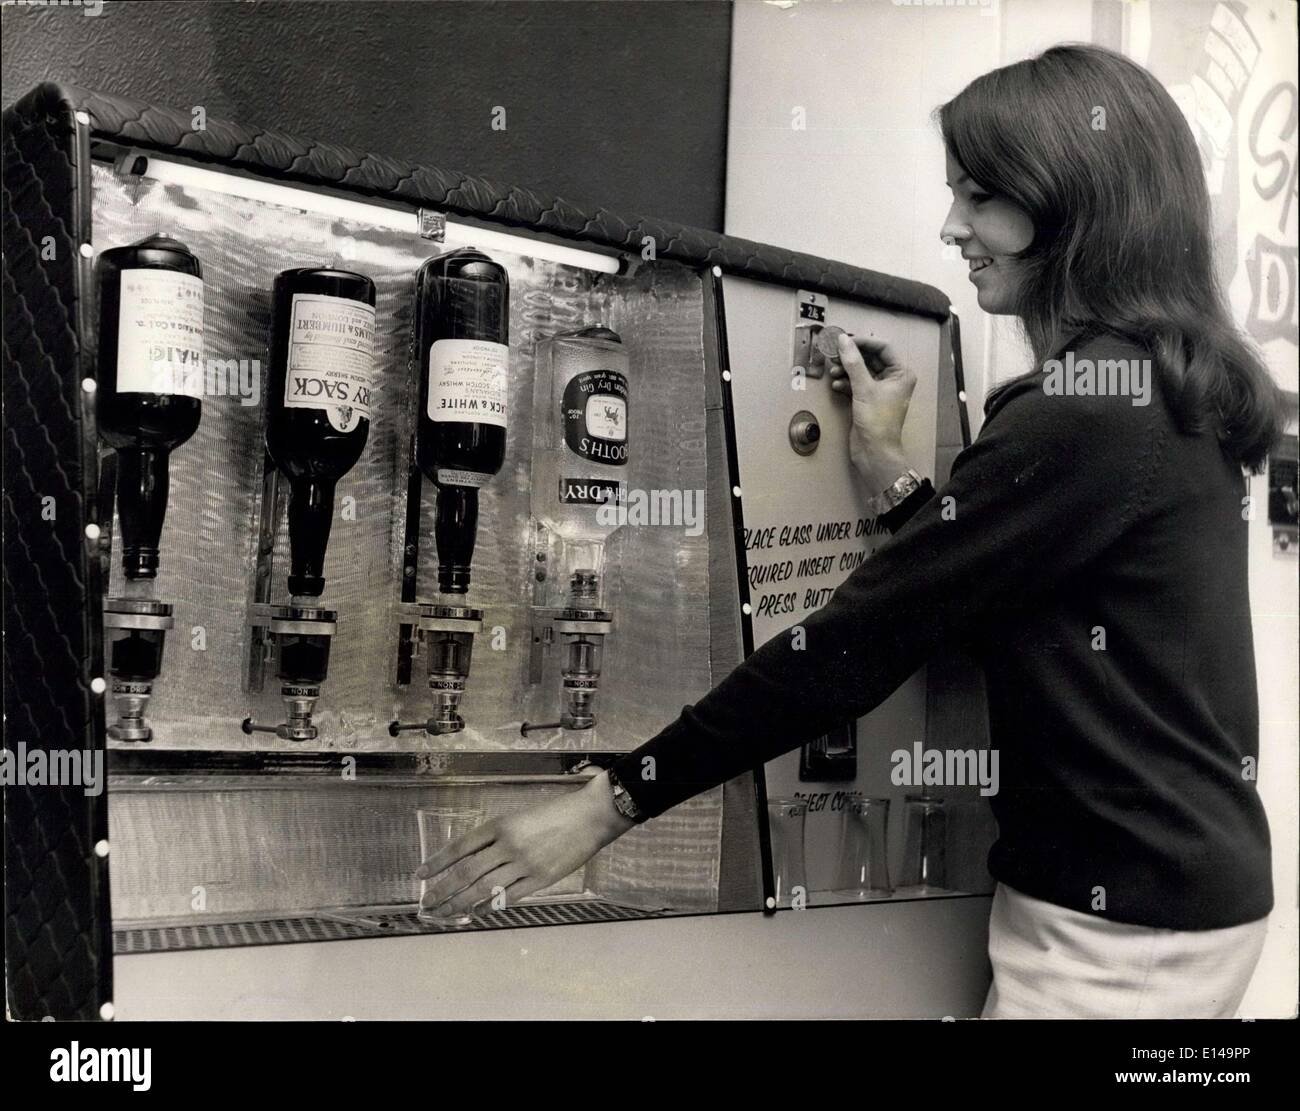 17. April 2012 - The Machine Bardame.: Großbritannien erste  Münz-öffentliche bars - Maschinen verkaufen Bier und Spirituosen, in London  gezeigt wurden. Die Maschinen sind bestimmt für den Einsatz im Theater  Fayers, Rennen